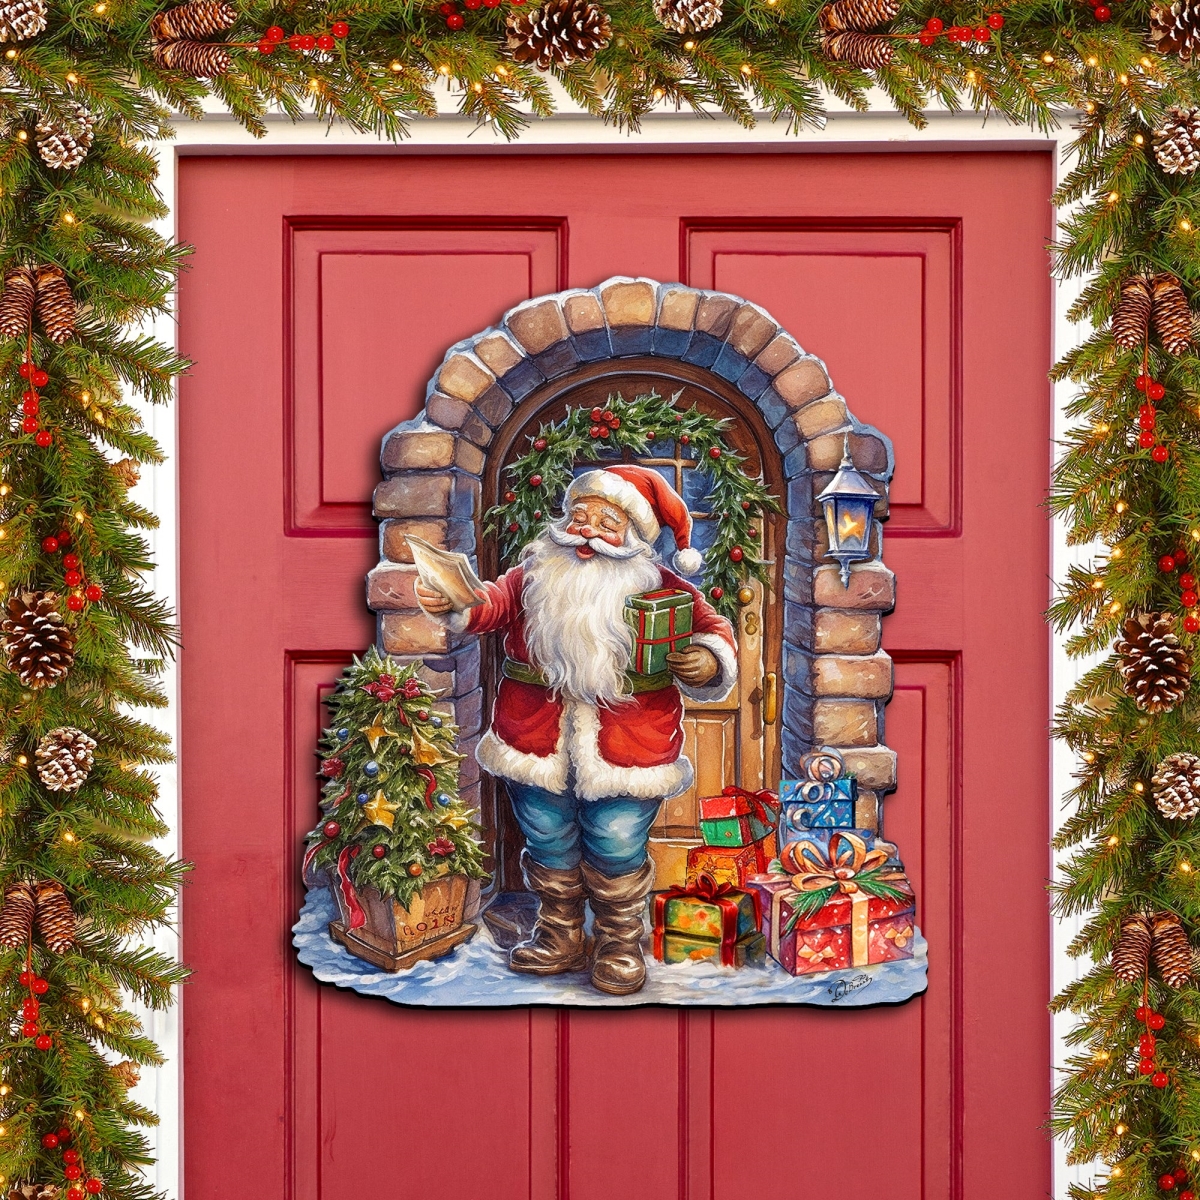 Designocracy 8611045H 24 x 18 in. Santas Surprise Visit Holiday Christmas Santa Snowman Door Decor